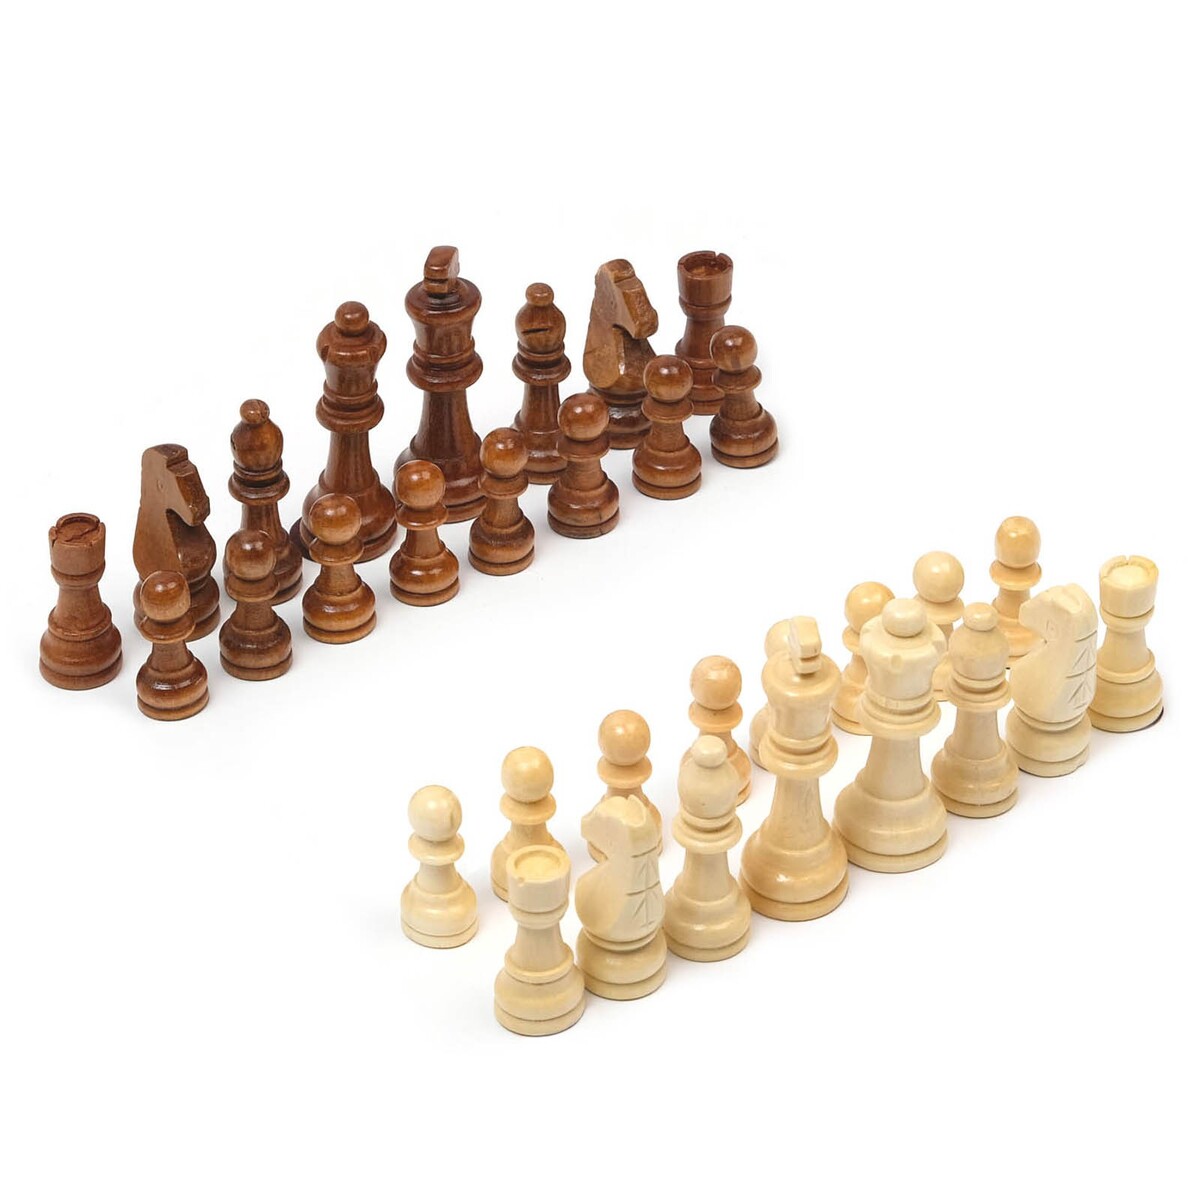 Шахматные фигуры, король h-9 см, пешка h-4 см титановый король